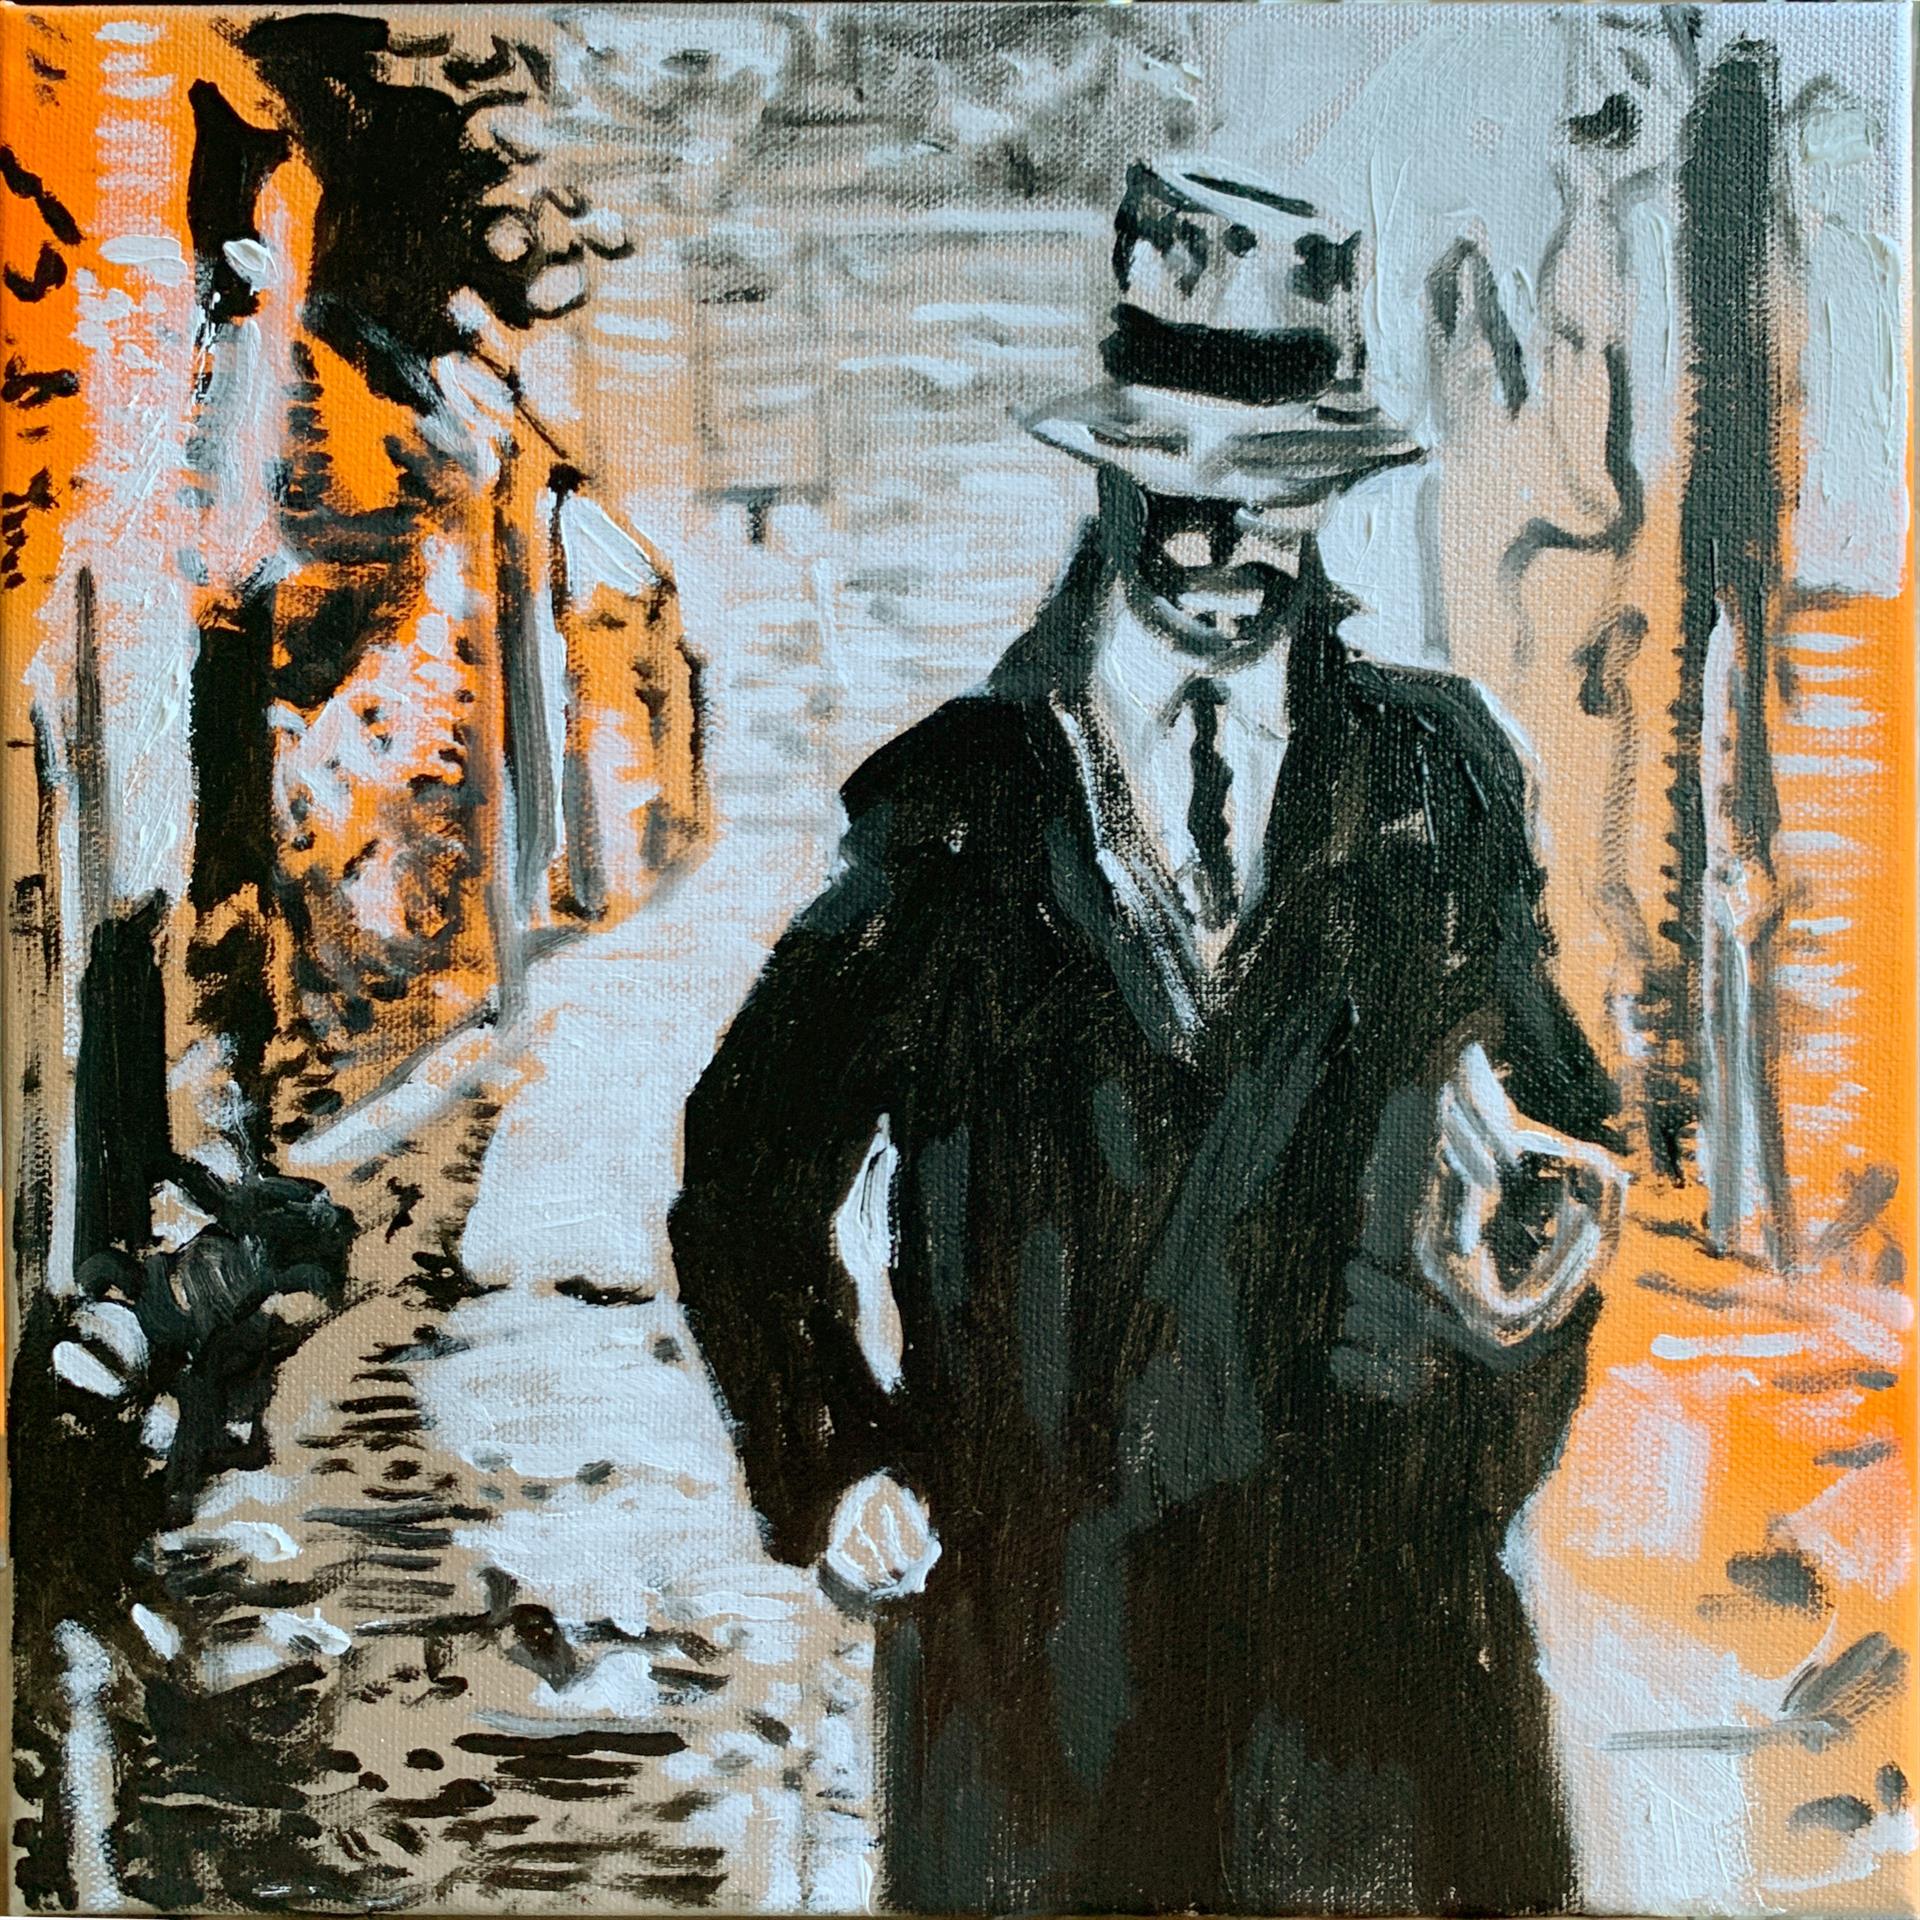 Steve Harlow, Man in Hat. Oil, 12” x 12”. $1000.